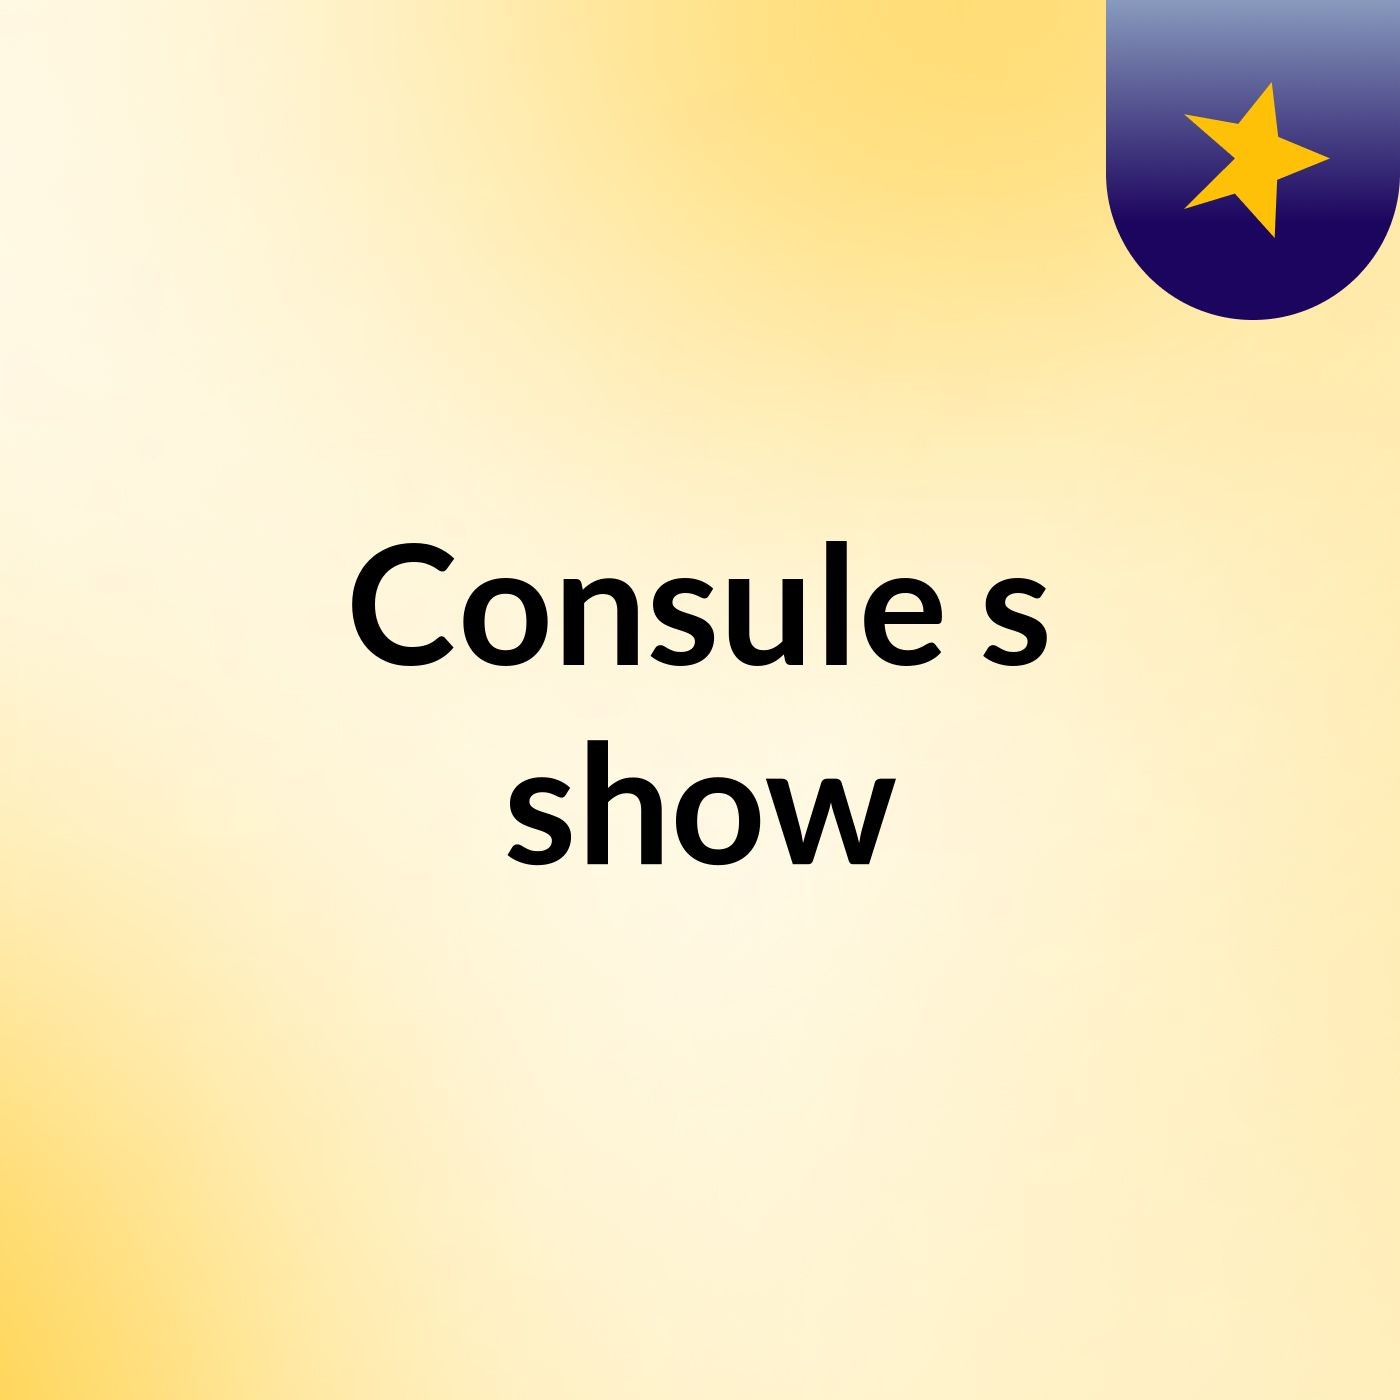 Consule's show